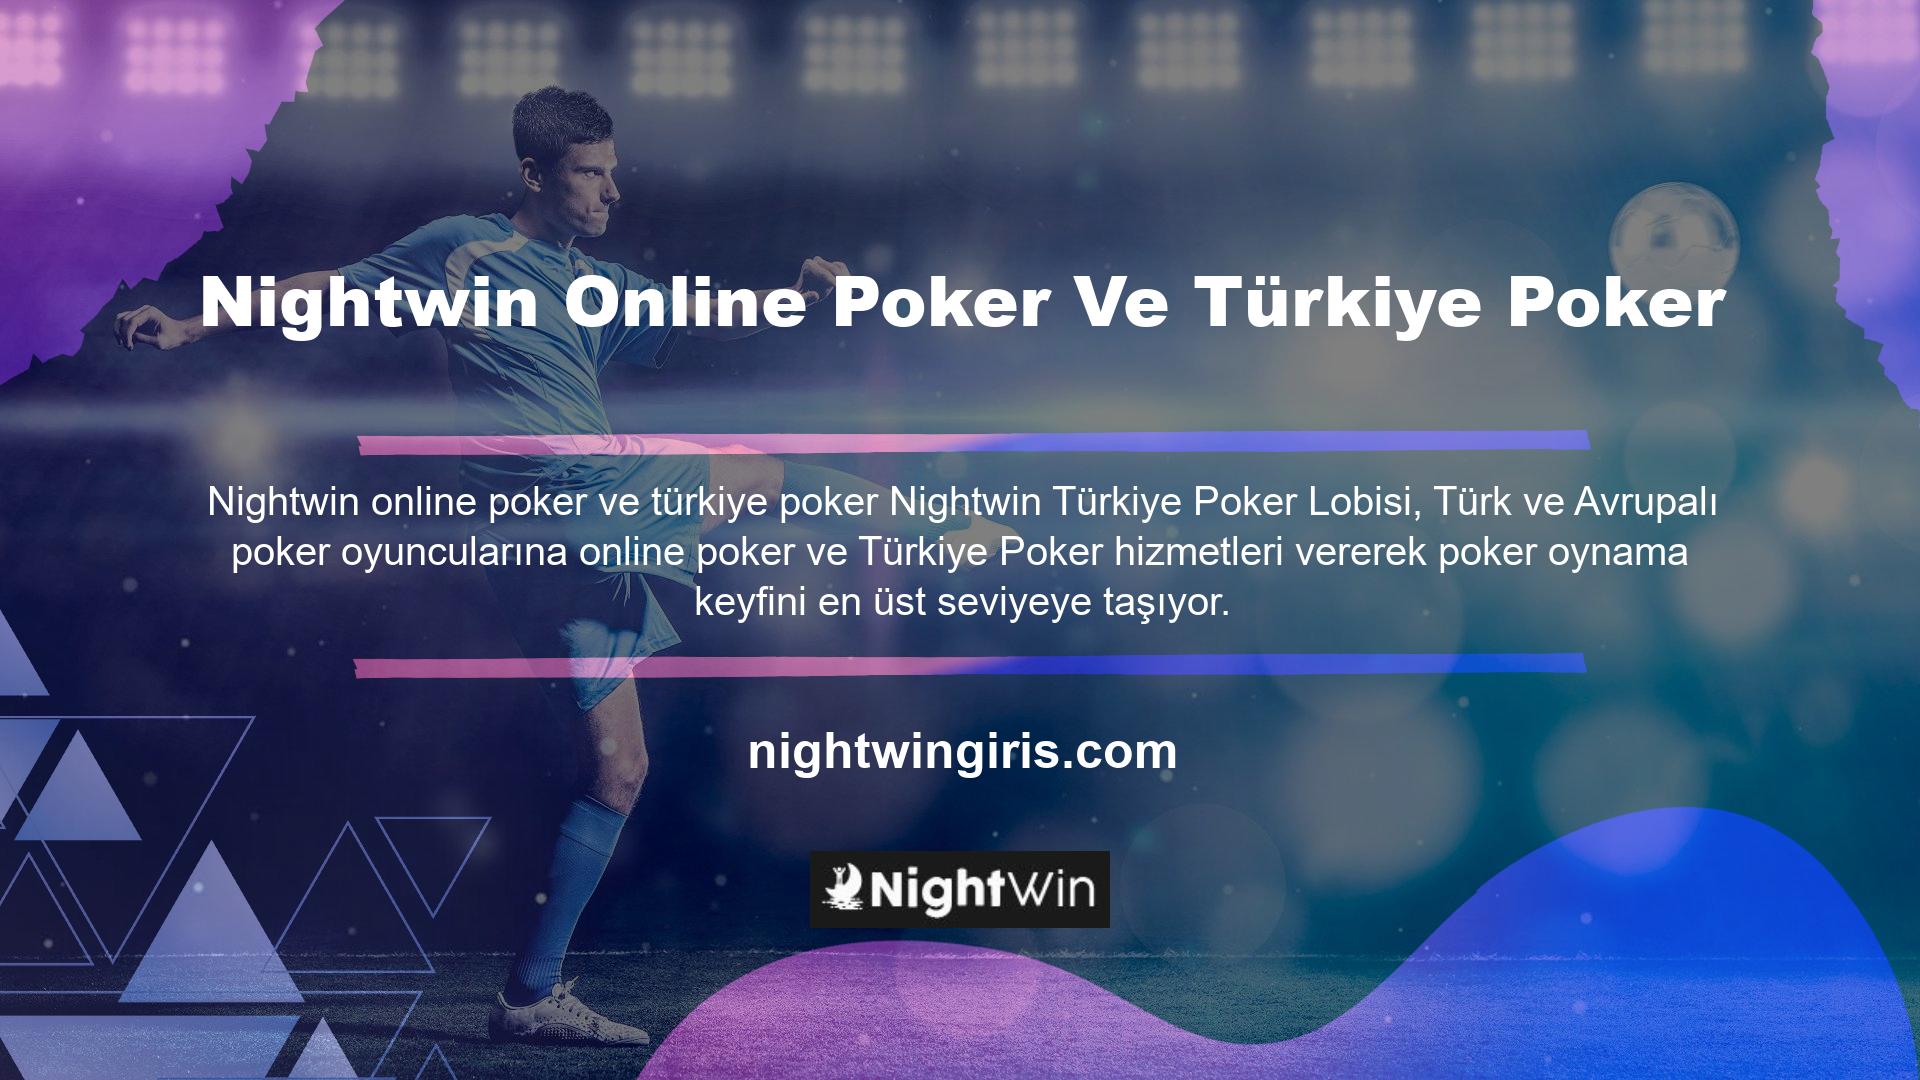 Eğer Türk Pokerinde yeniyseniz, bugün Nightwin Türk Poker Lobisini ziyaret edin